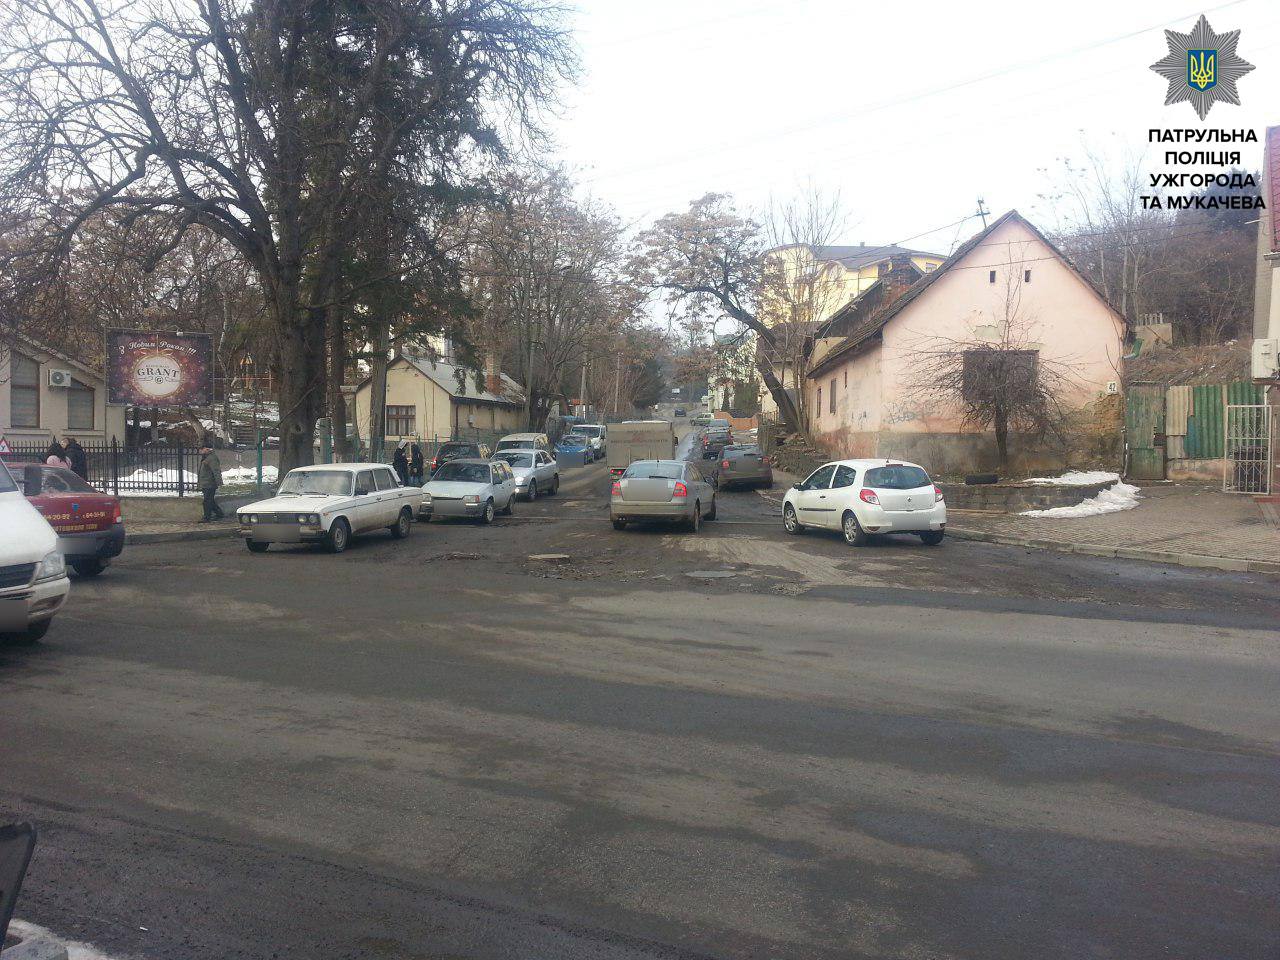 В Ужгороде патрульная полиция нашла дураков и плохие дороги